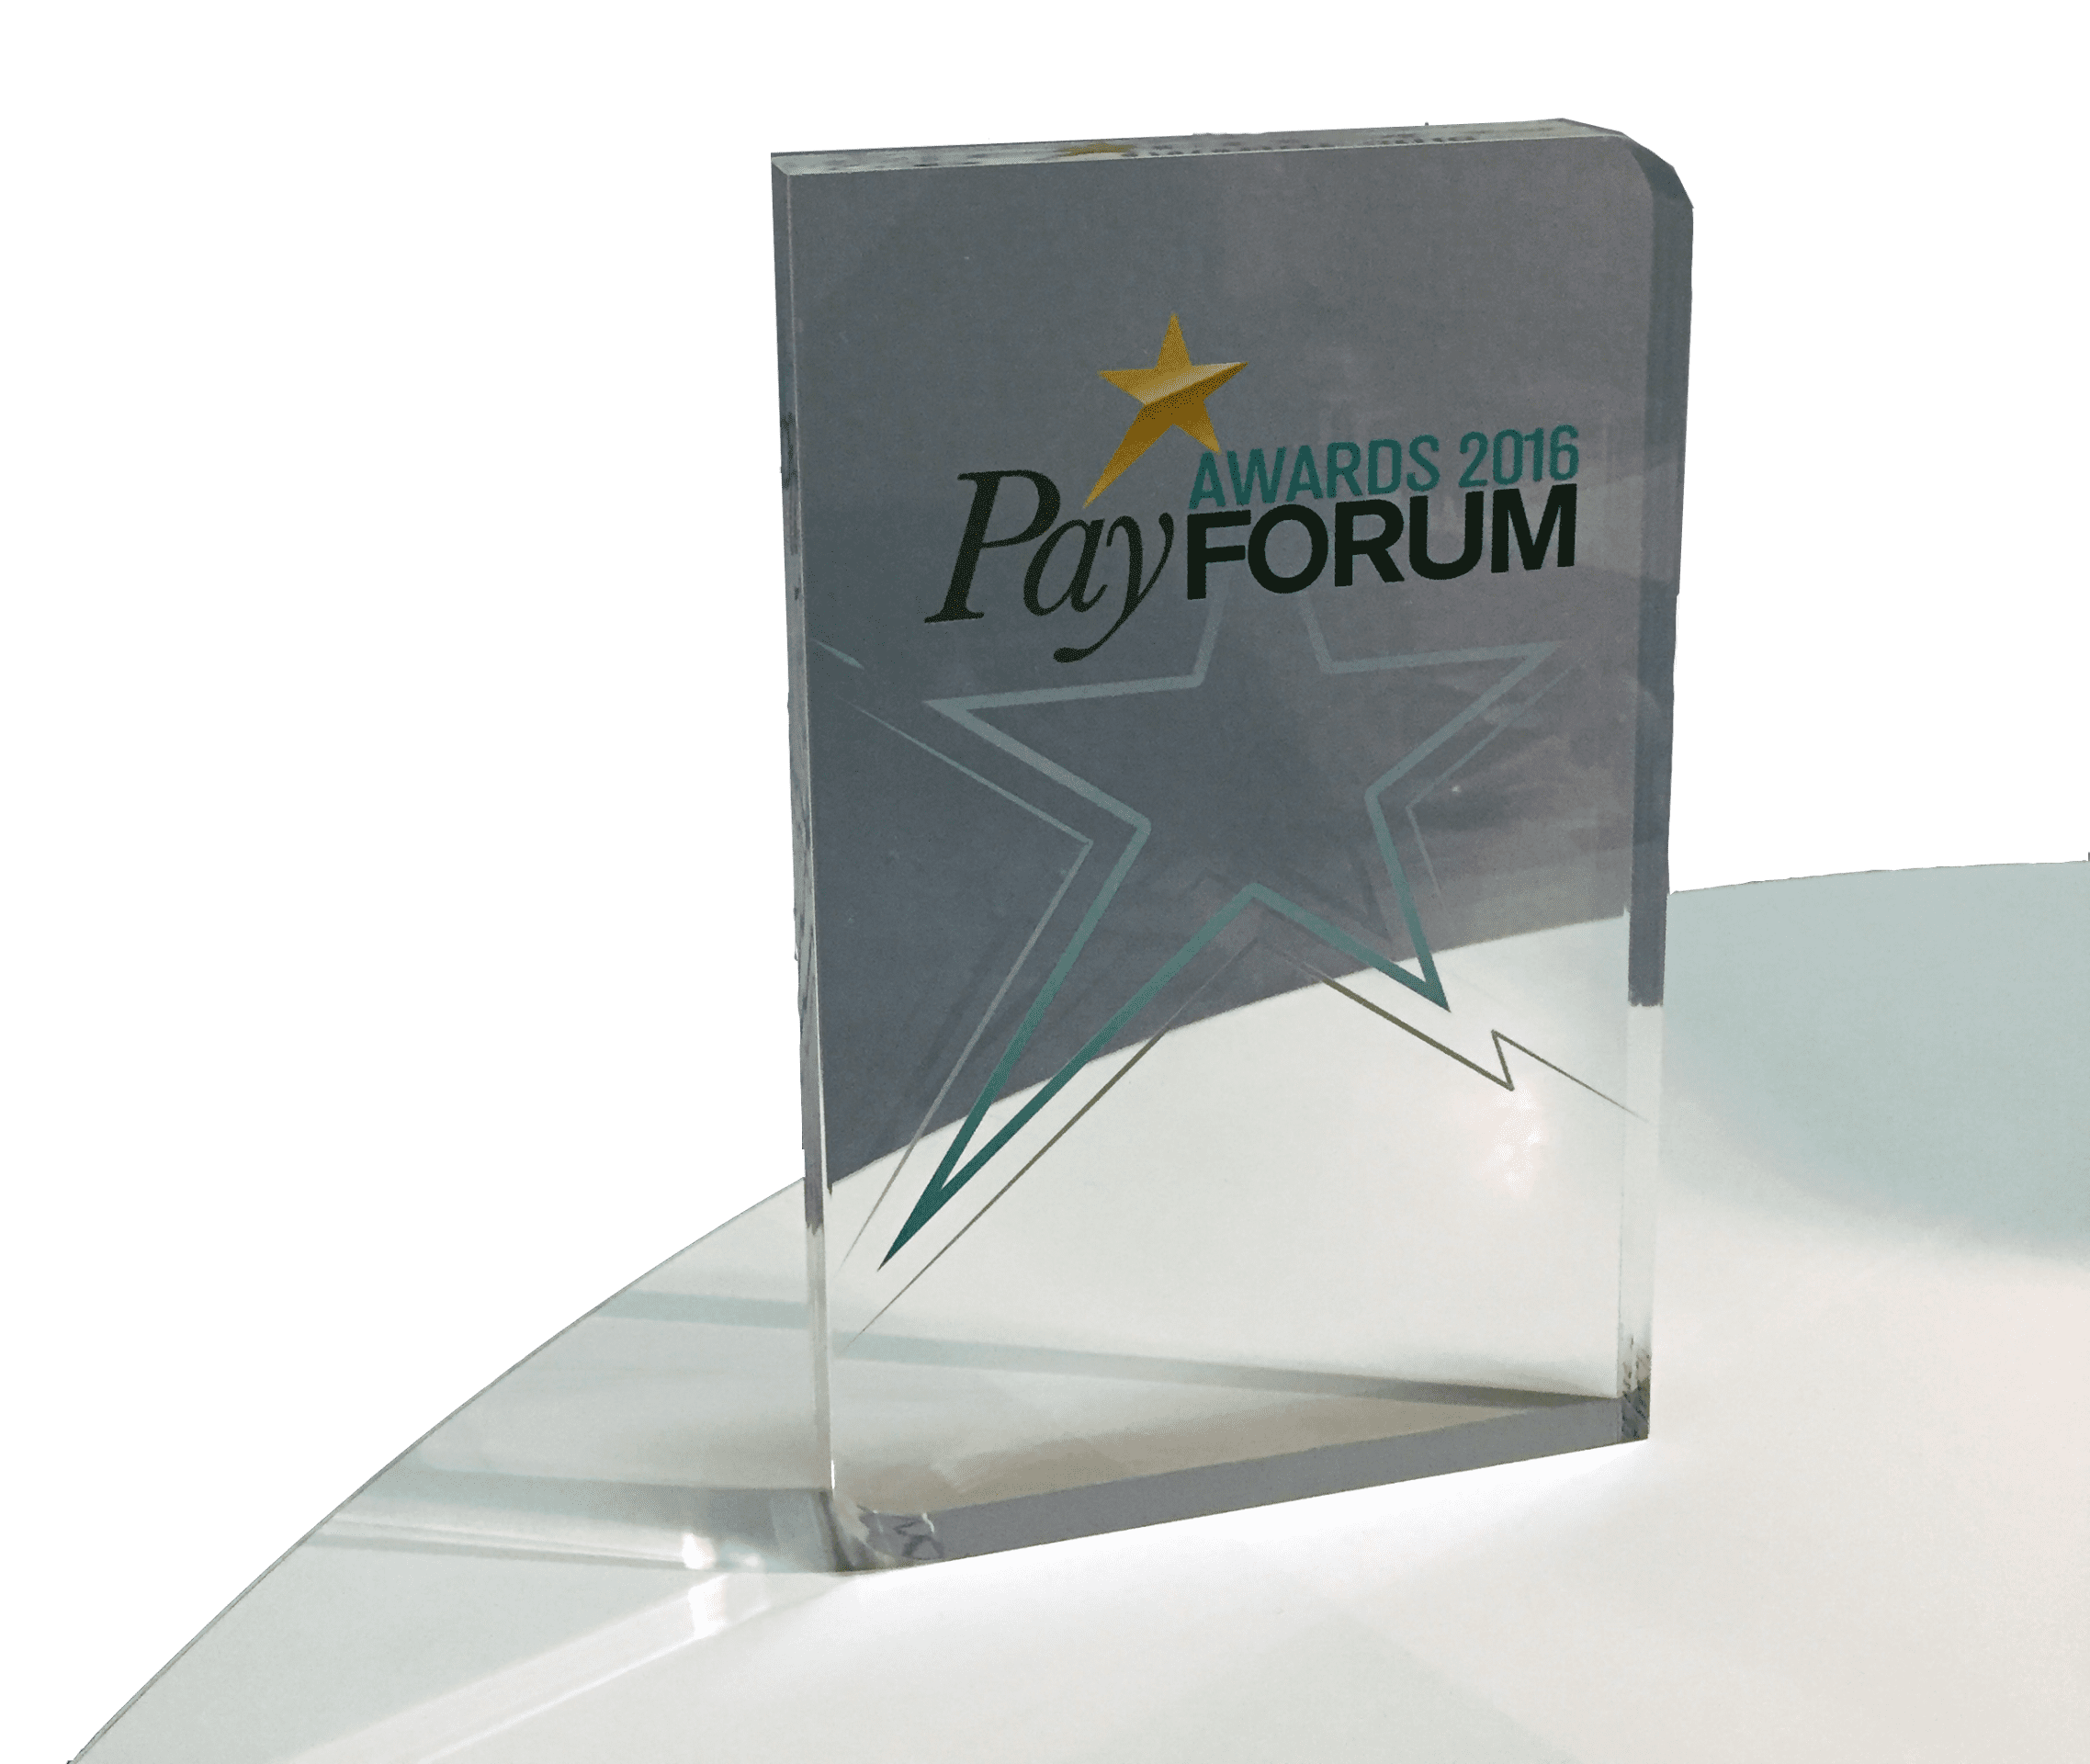 Payforum awards 2016